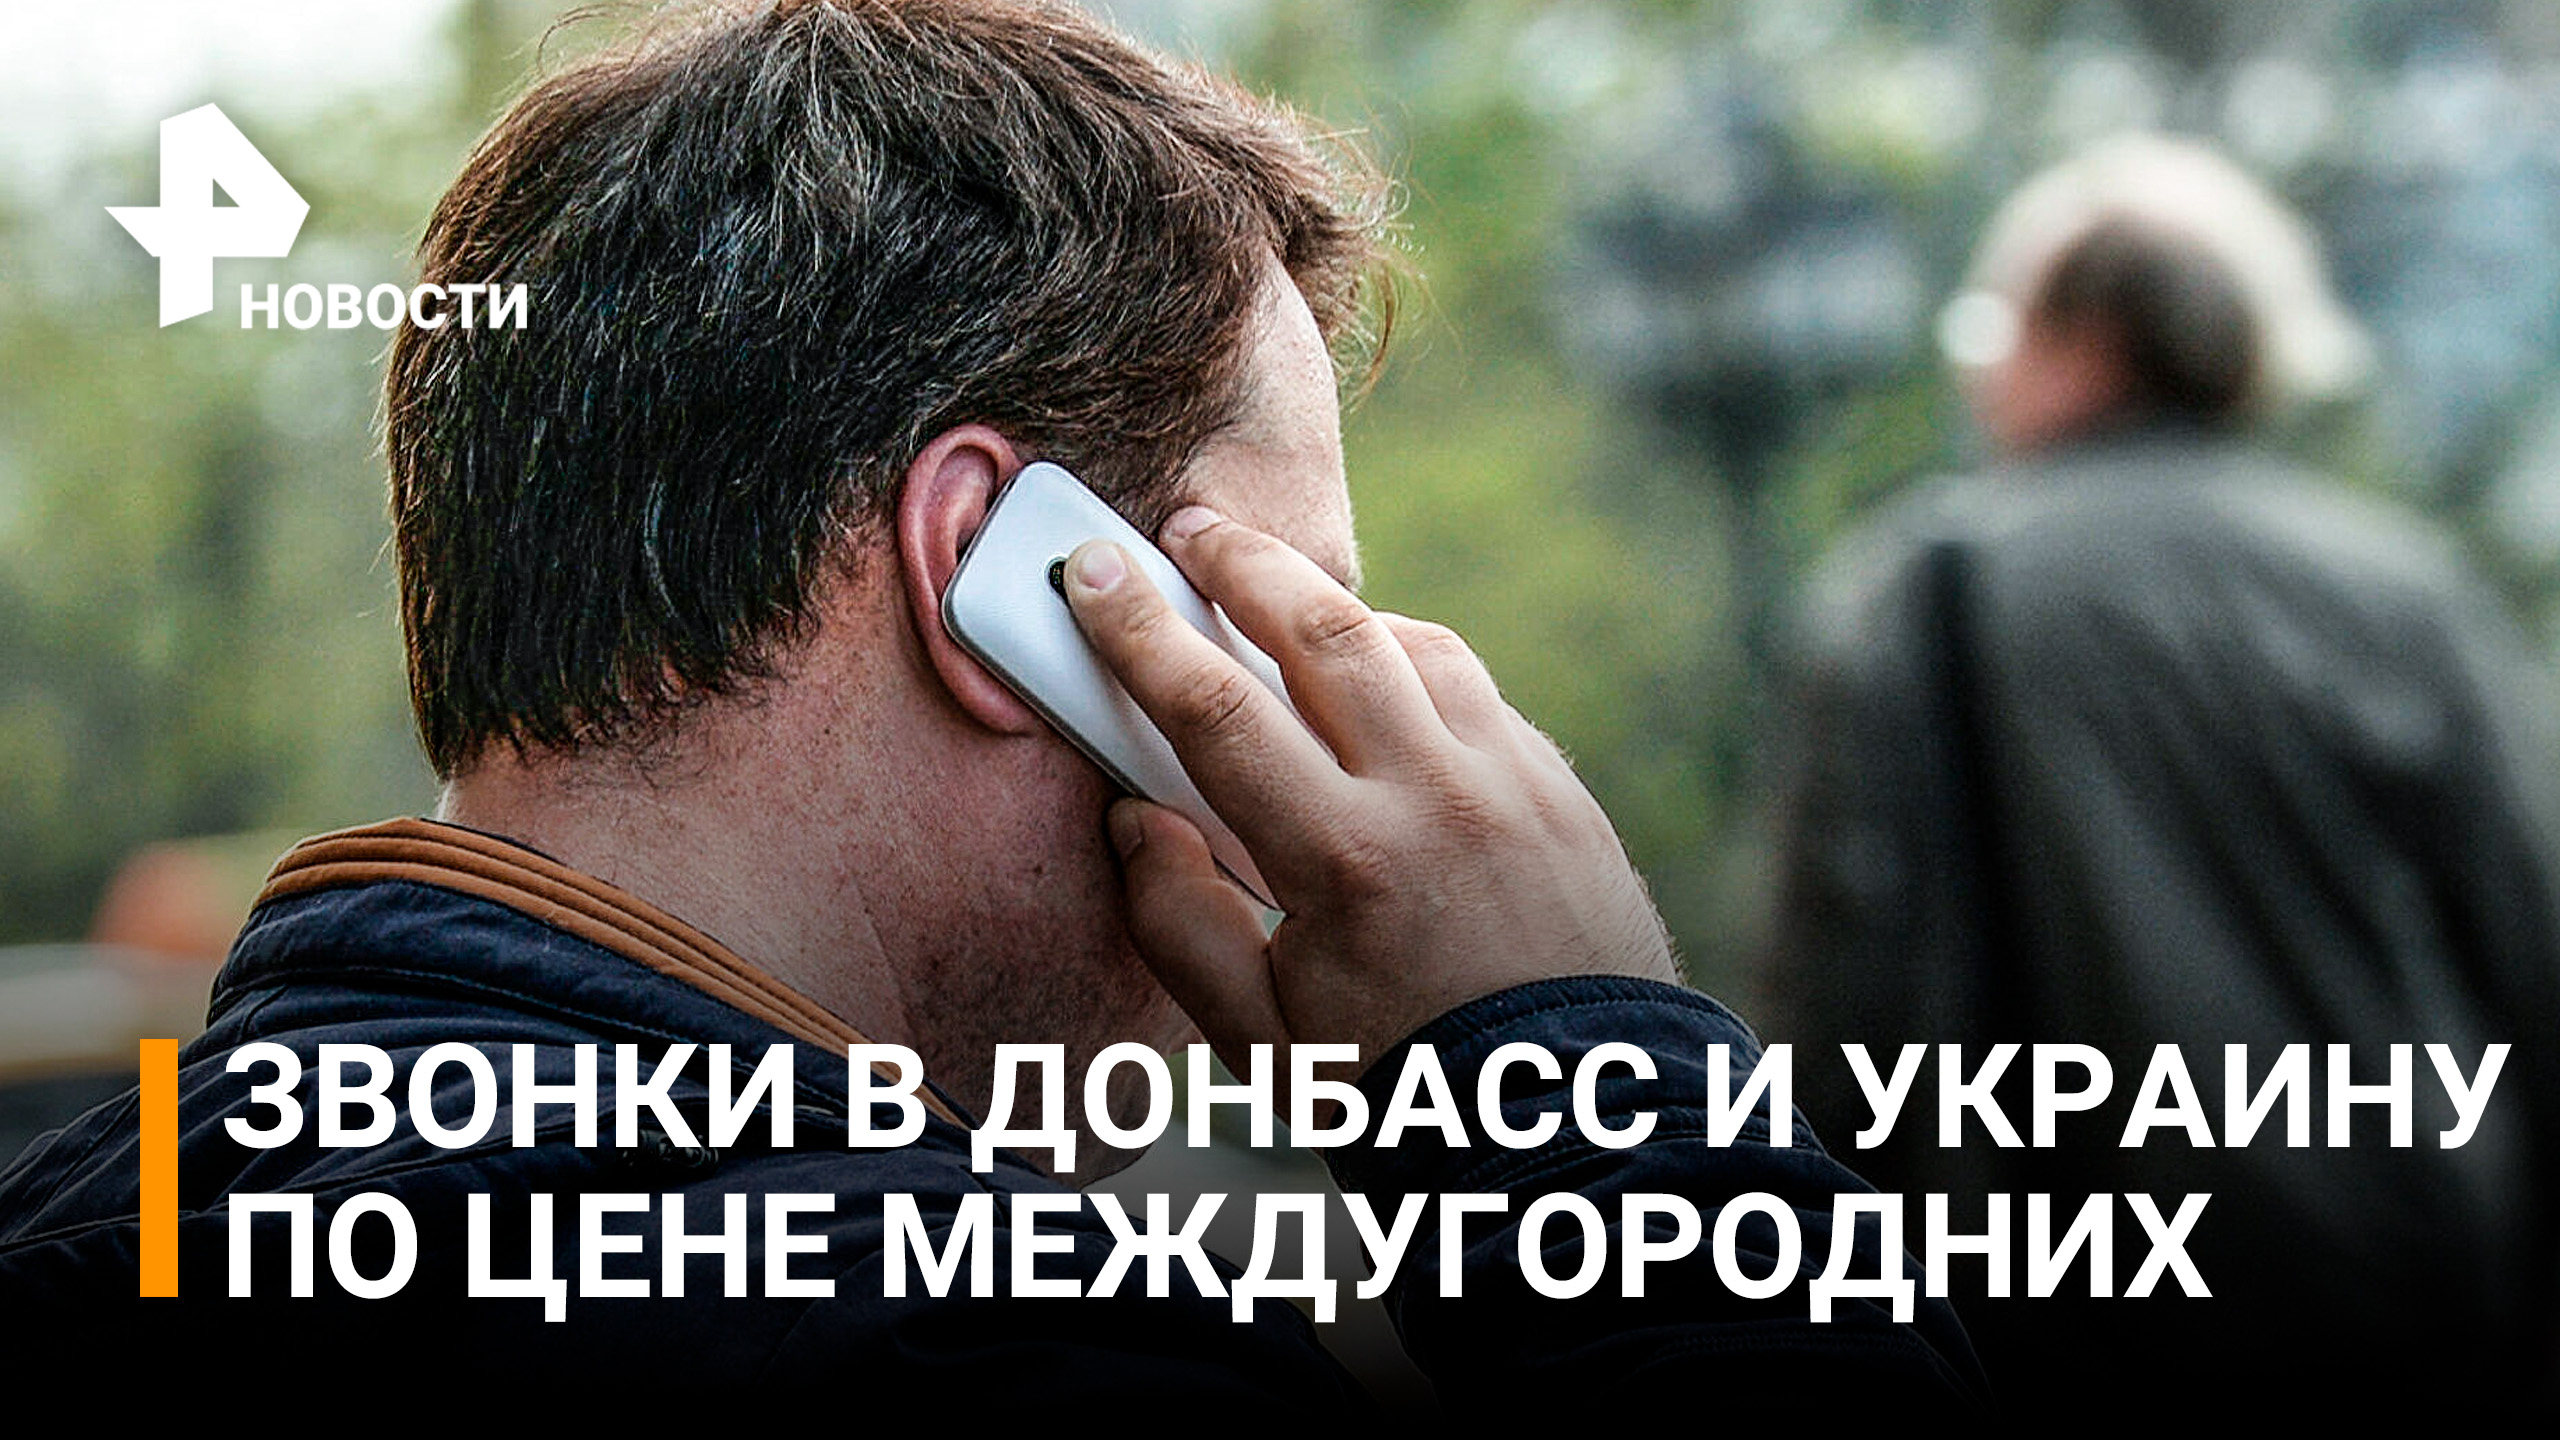 Сотовые операторы снизили цены на звонки в Донбасс и Украину назло санкциям / РЕН Новости